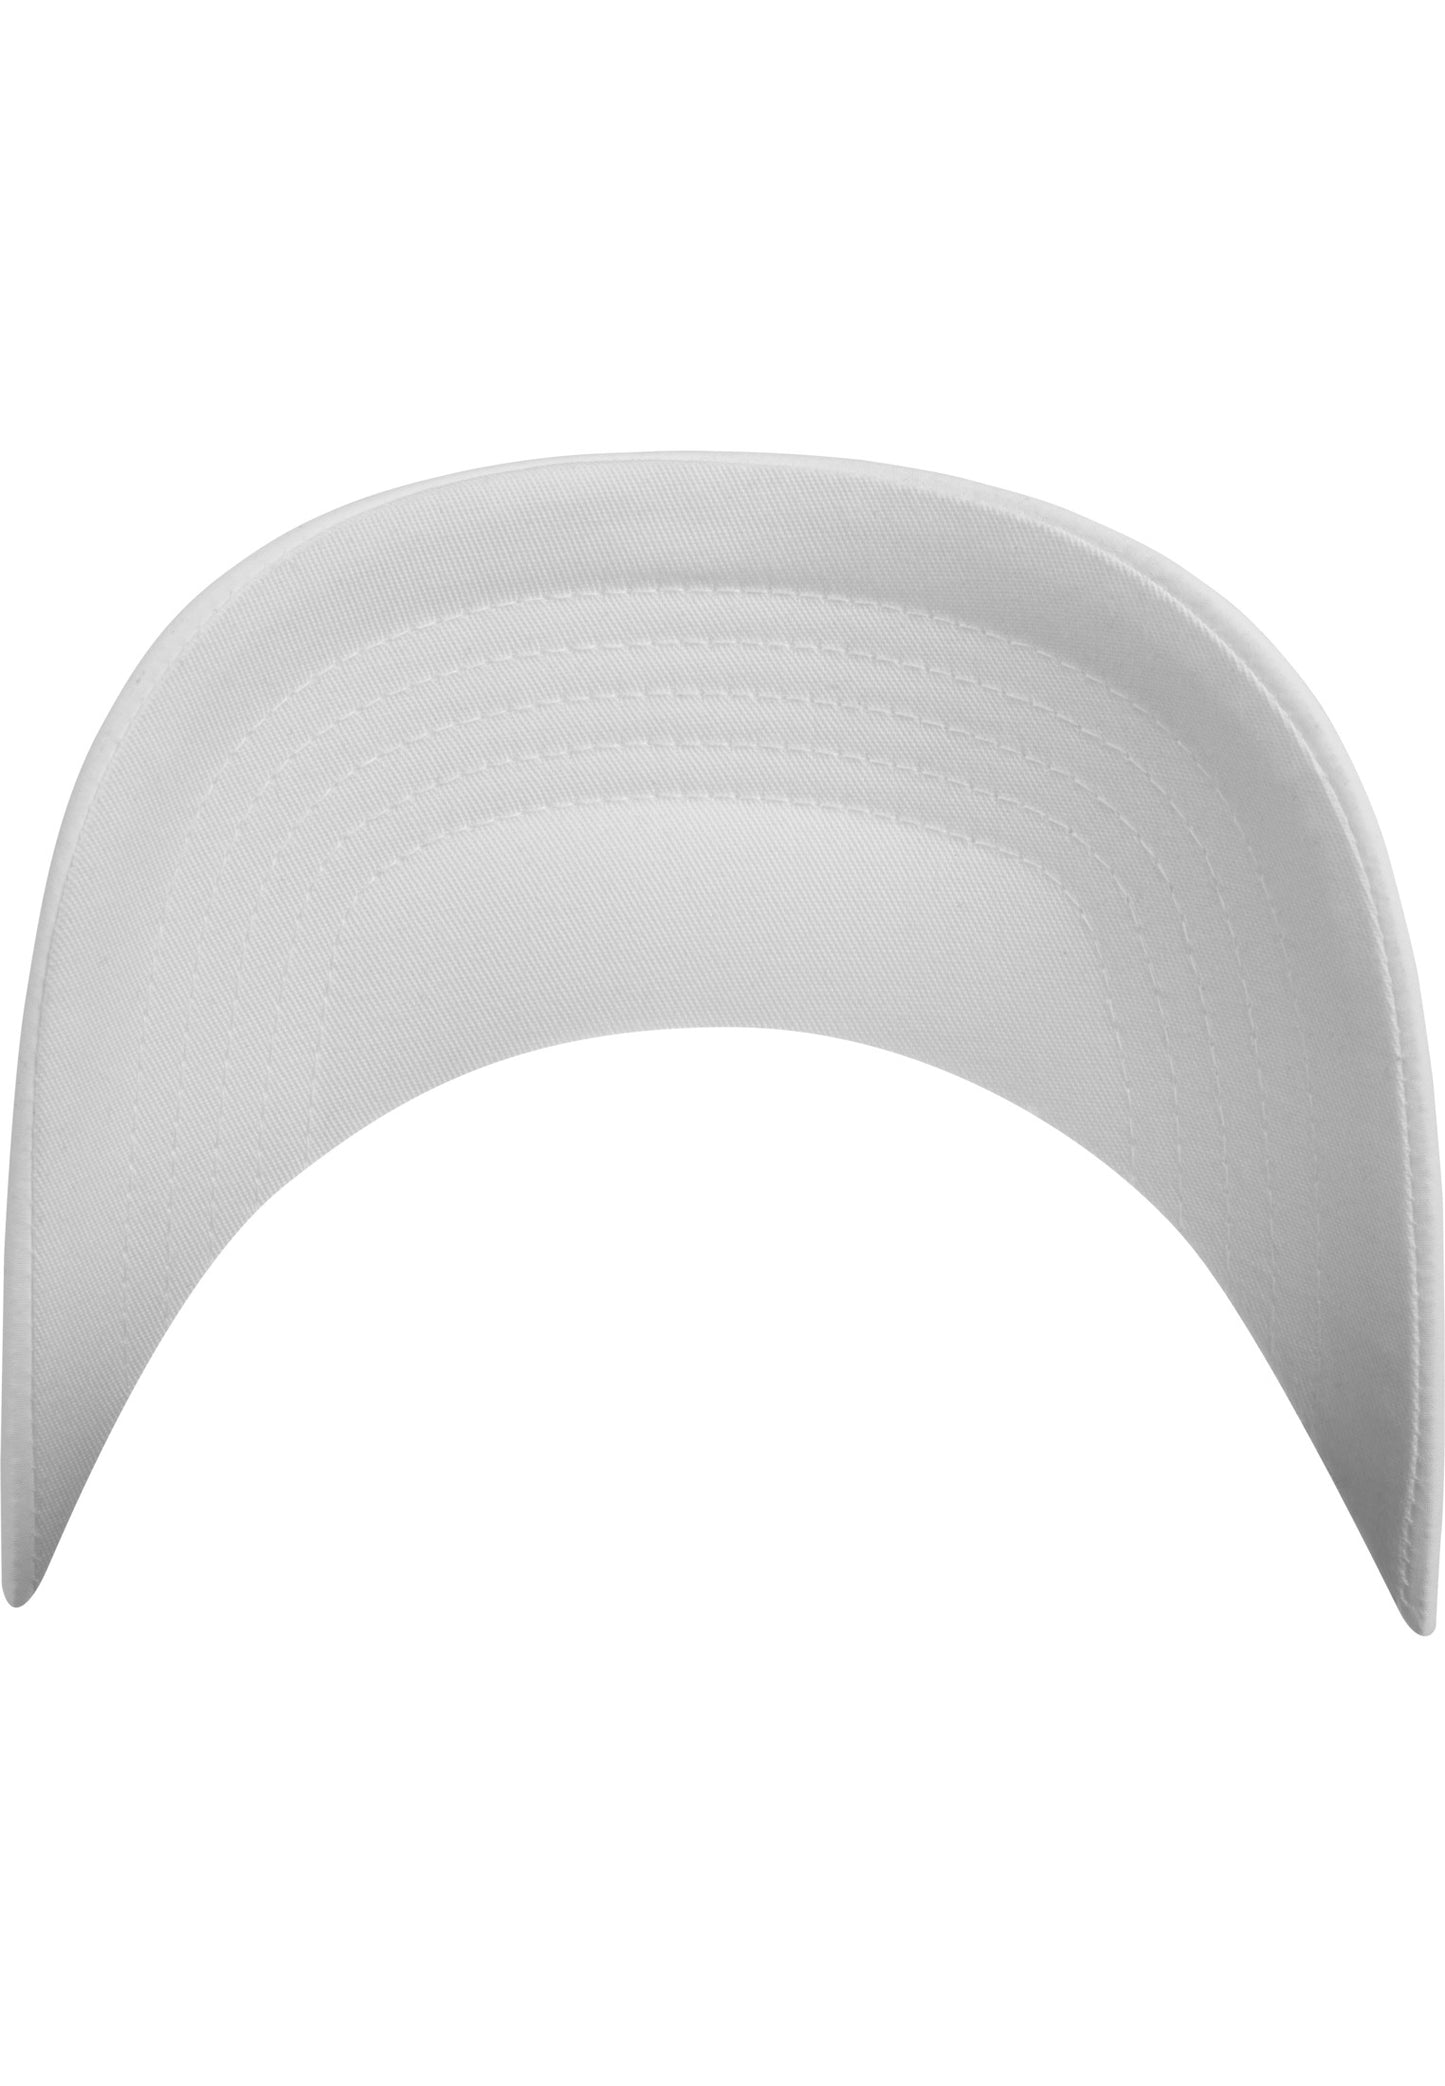 Flexfit Perforated Cap